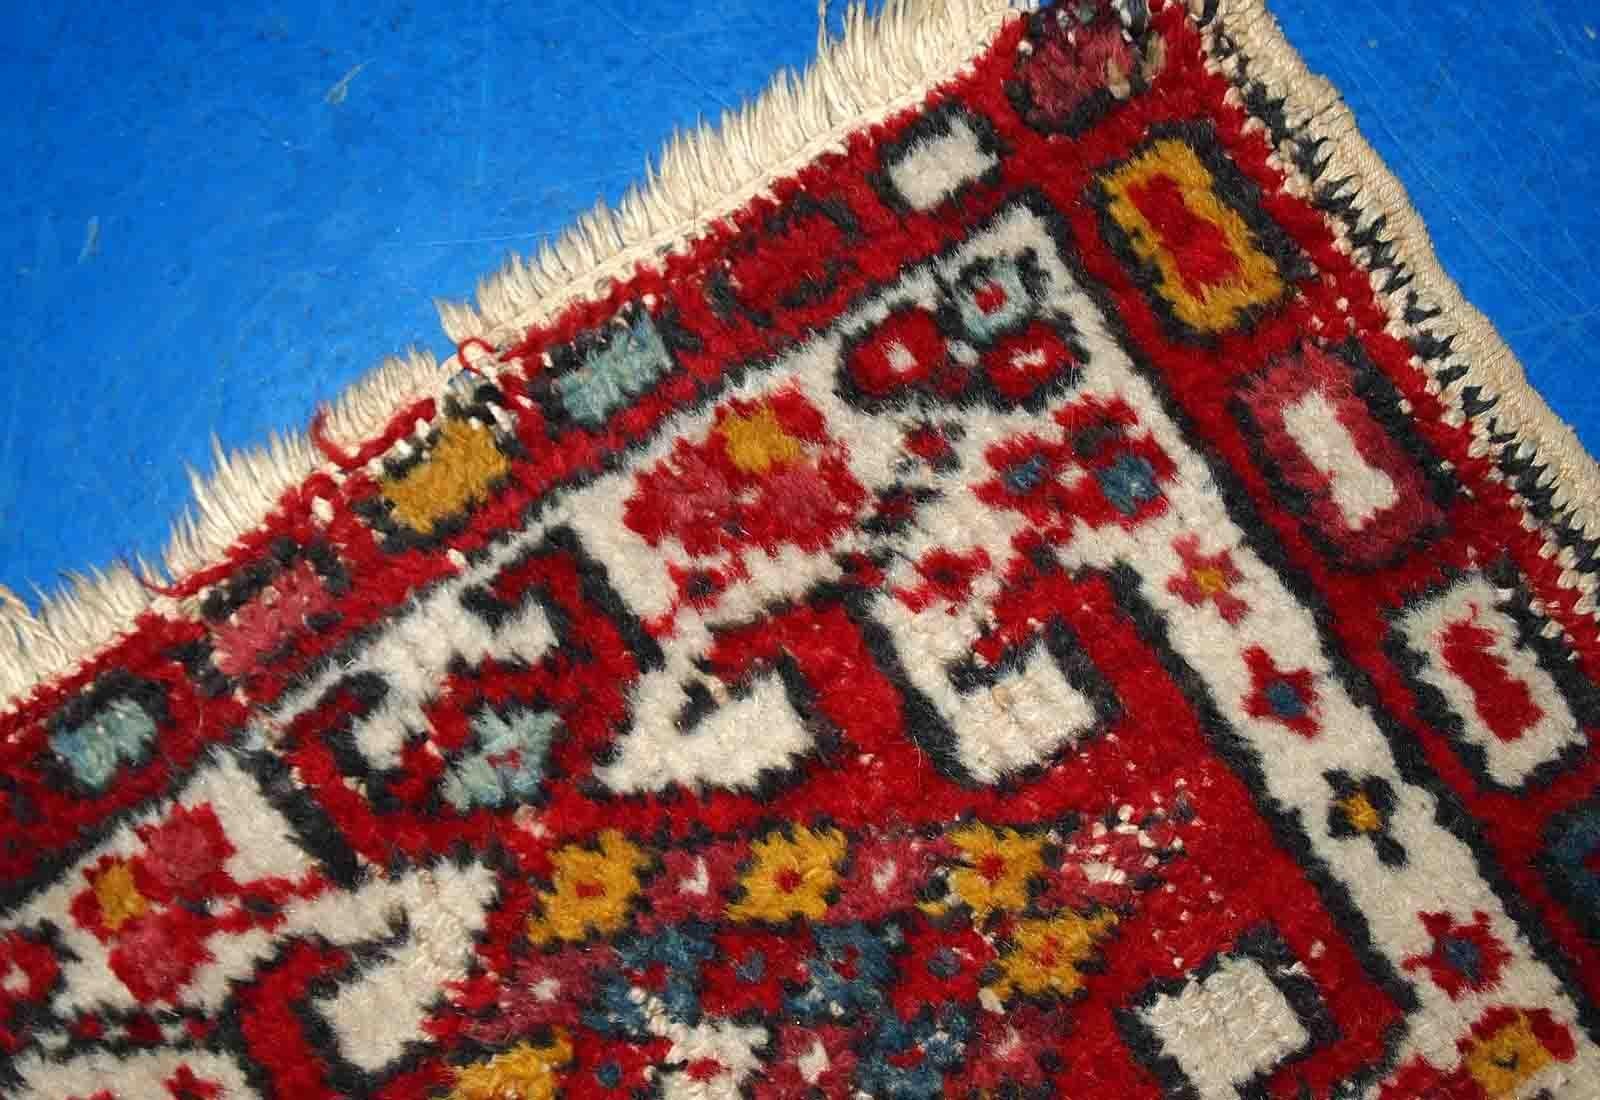 Handgefertigte Hamadan-Matte aus dem Nahen Osten im Originalzustand, mit altersbedingten Gebrauchsspuren. Der Teppich stammt aus dem Ende des 20. Jahrhunderts und ist in den Farben Rot und Weiß gehalten.

-zustand: original, leichte